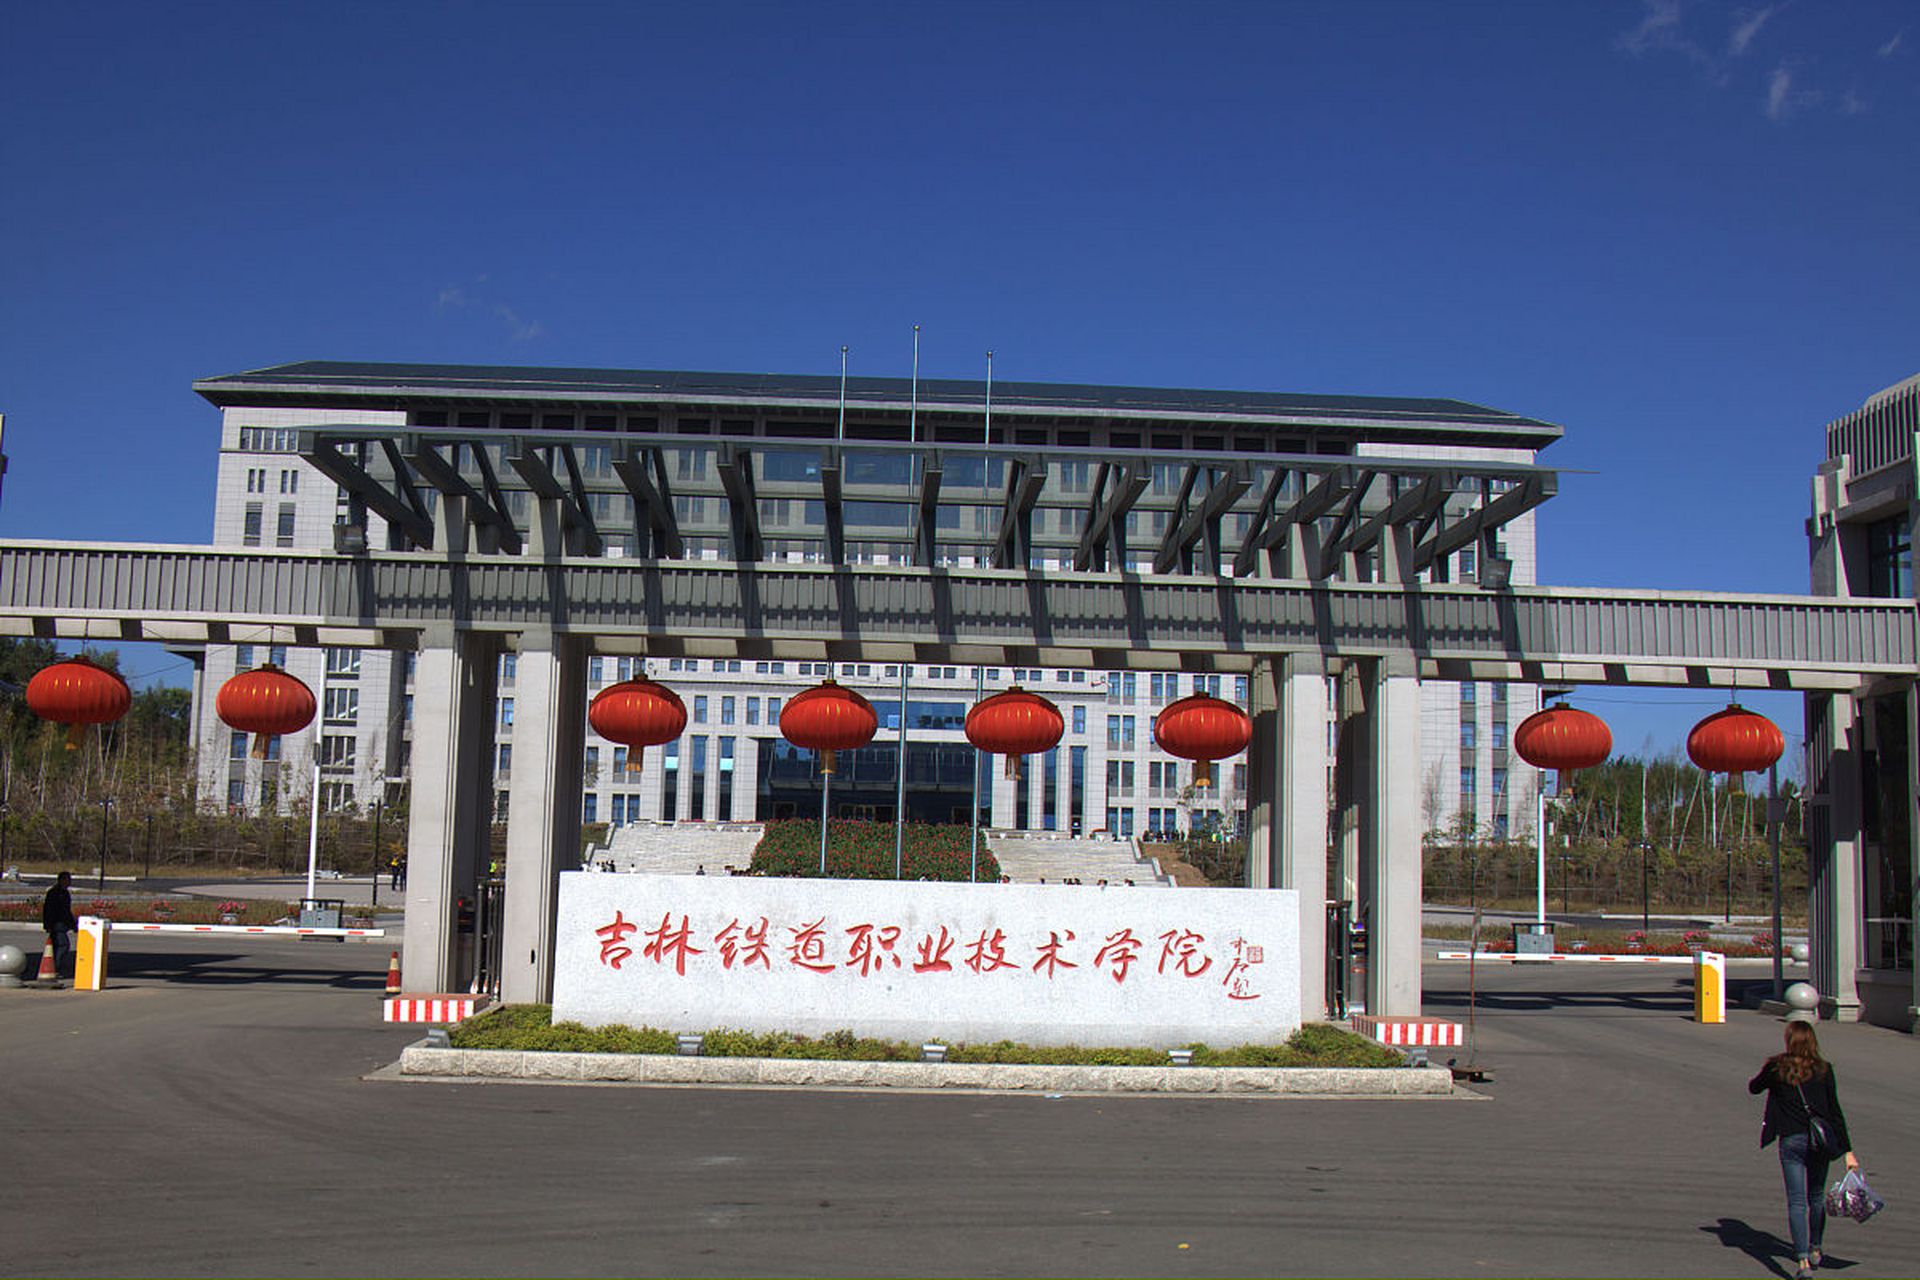 河北轨道交通中等专业学校是河北省重点建设的铁路类中等职业学校,以